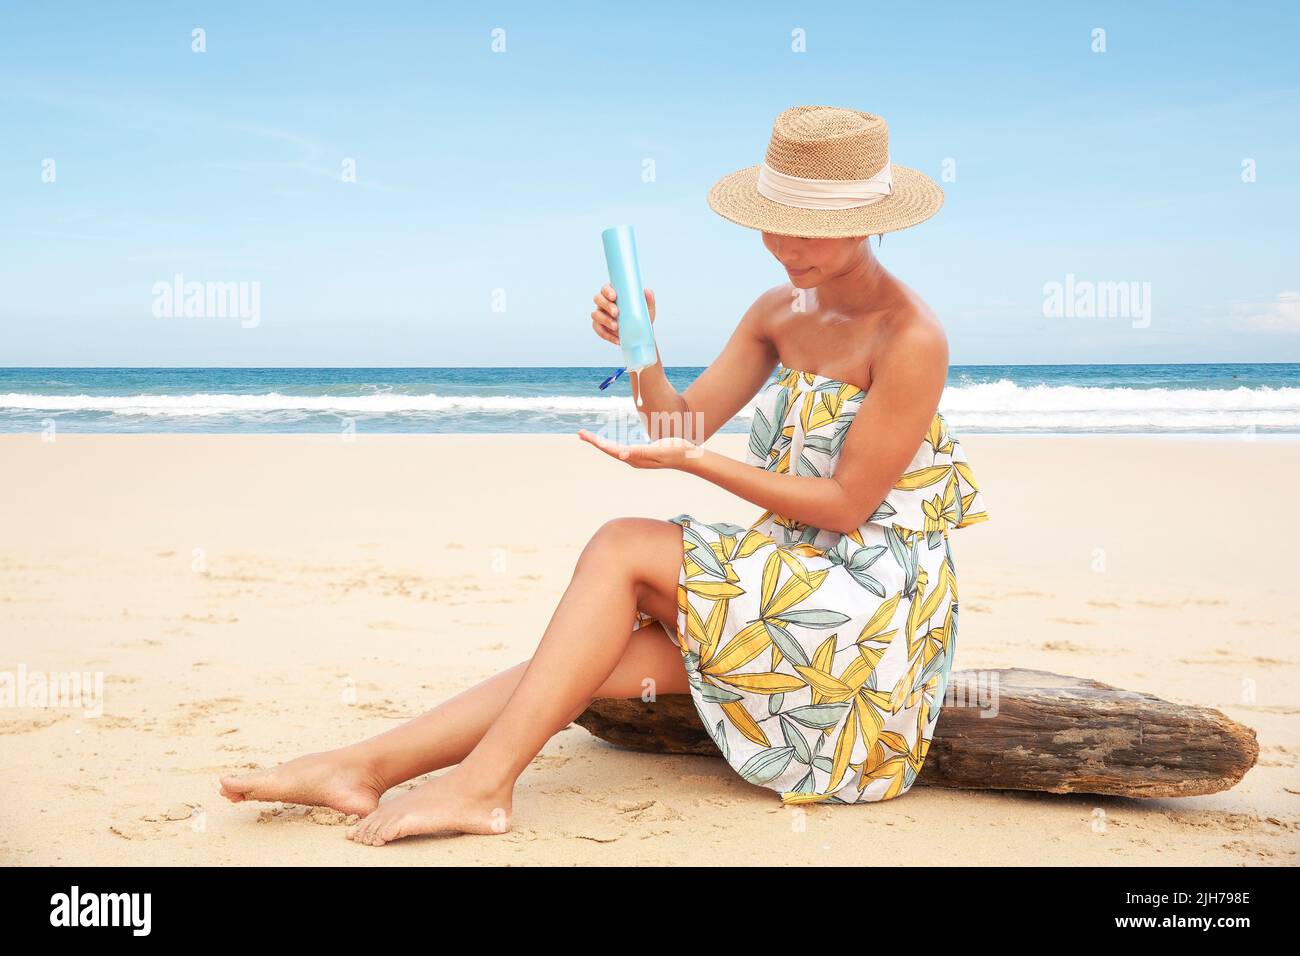 Mujer vertiendo aplicando crema protectora solar en la playa para protección solar de amplio espectro UVA, UVB Foto de stock